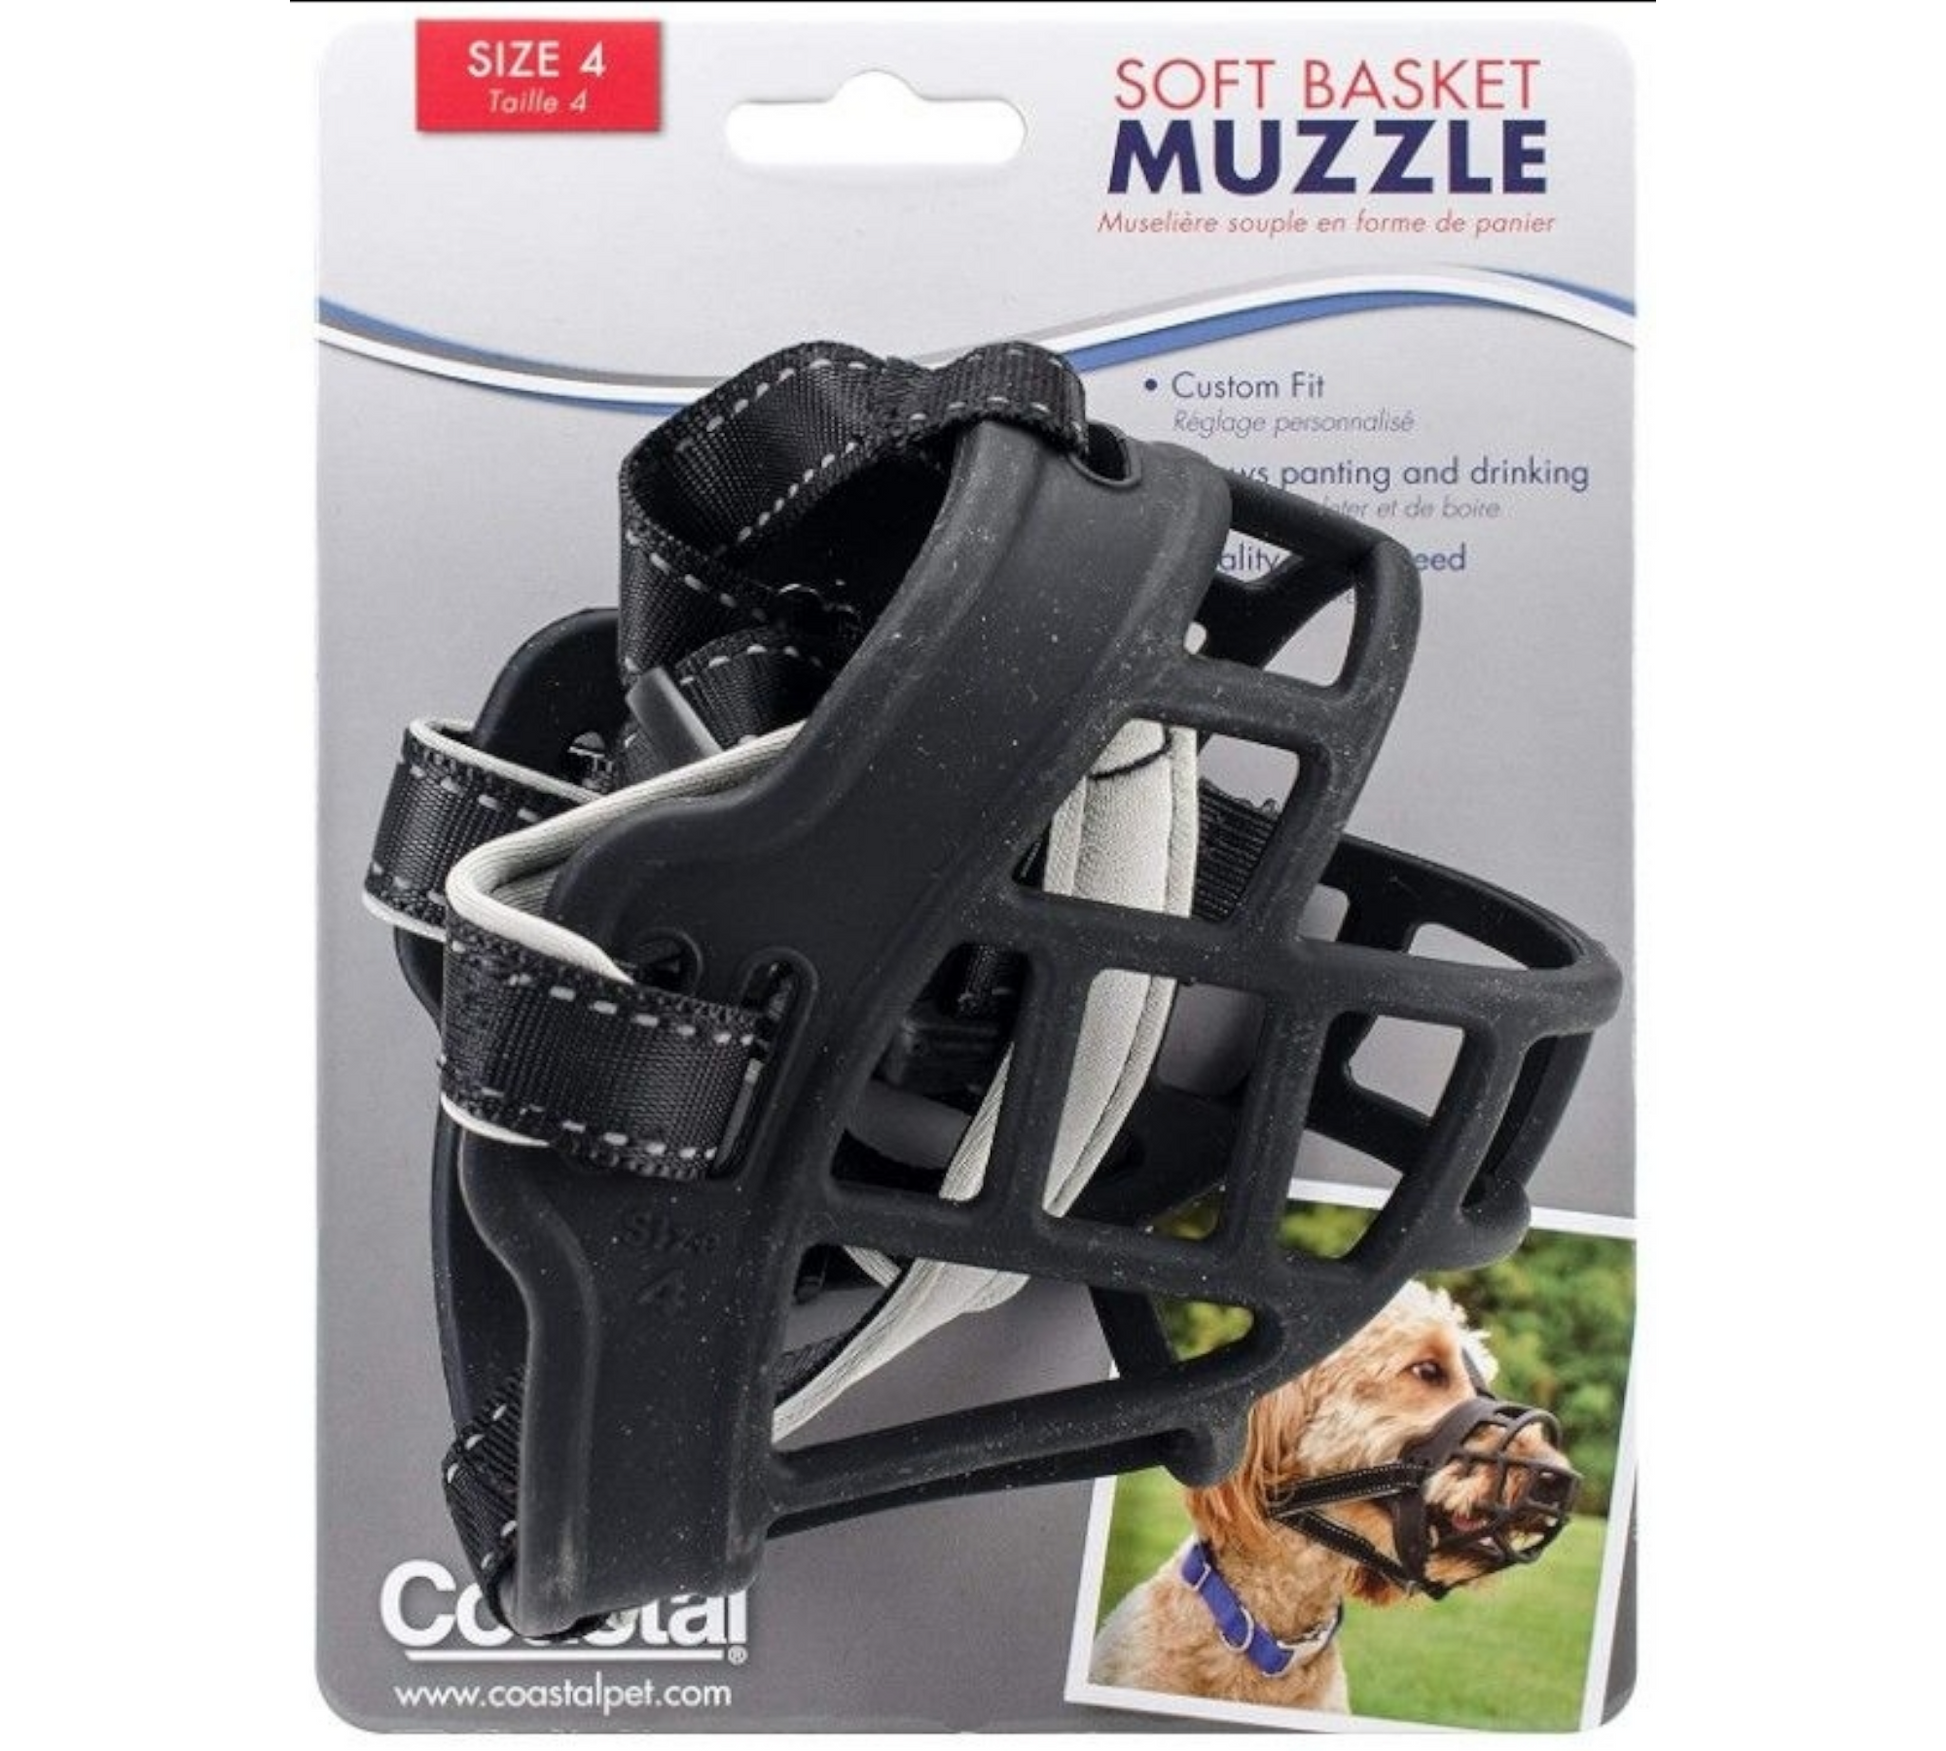 Canine's World Dog Muzzles Coastal Pet Products Soft Basket Dog Muzzle, Black Coastal Pet